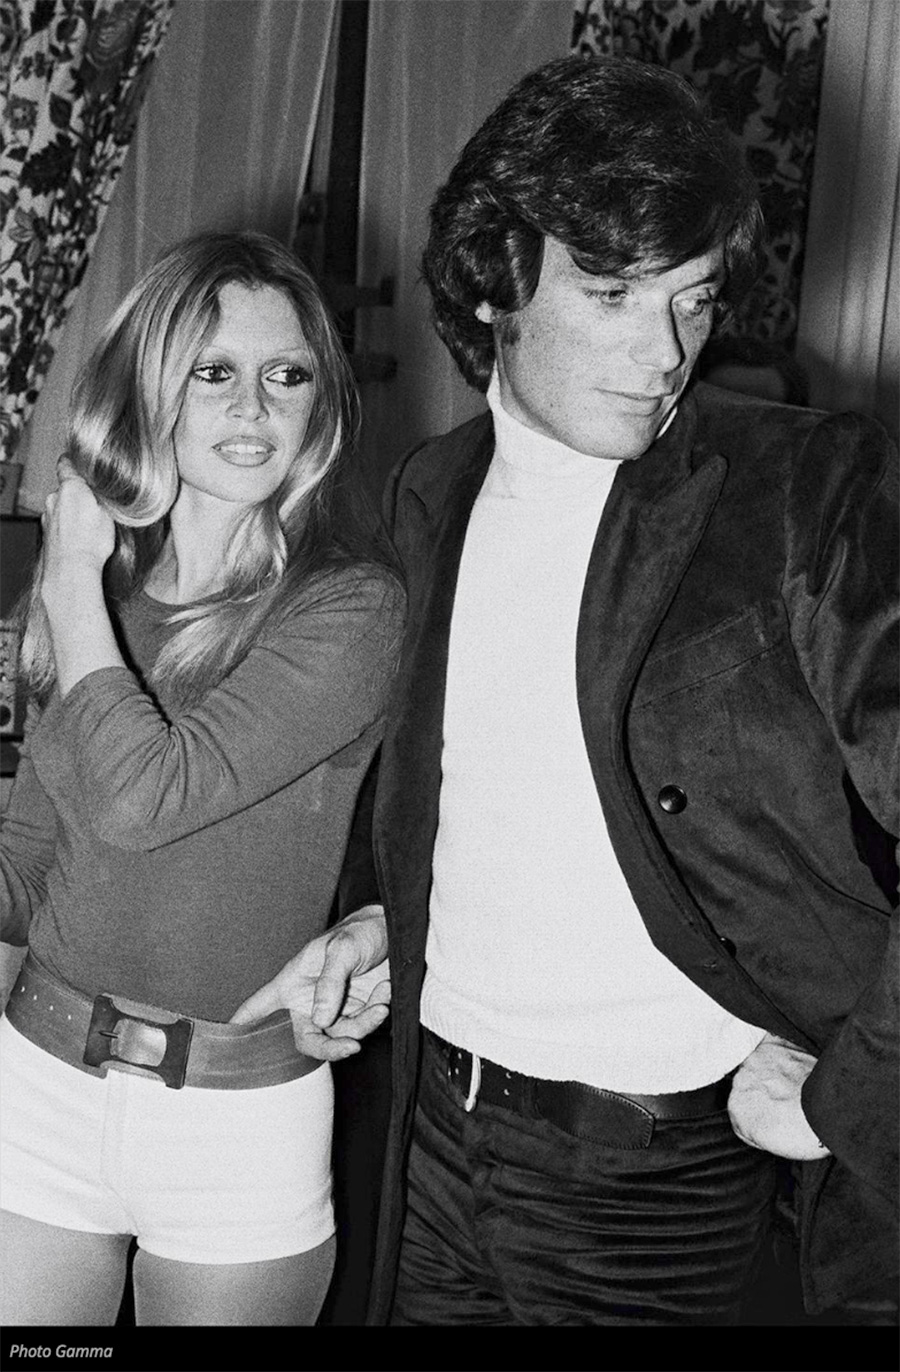 les plus belles photos de Brigitte Bardot.Brigitte Bardot en 1971, elle débute une idylle qui durera près d'un an avec Christian Kalt,
un barman rencontré à Méribel. © Photo : Gamma ( Source MadameFigaro)